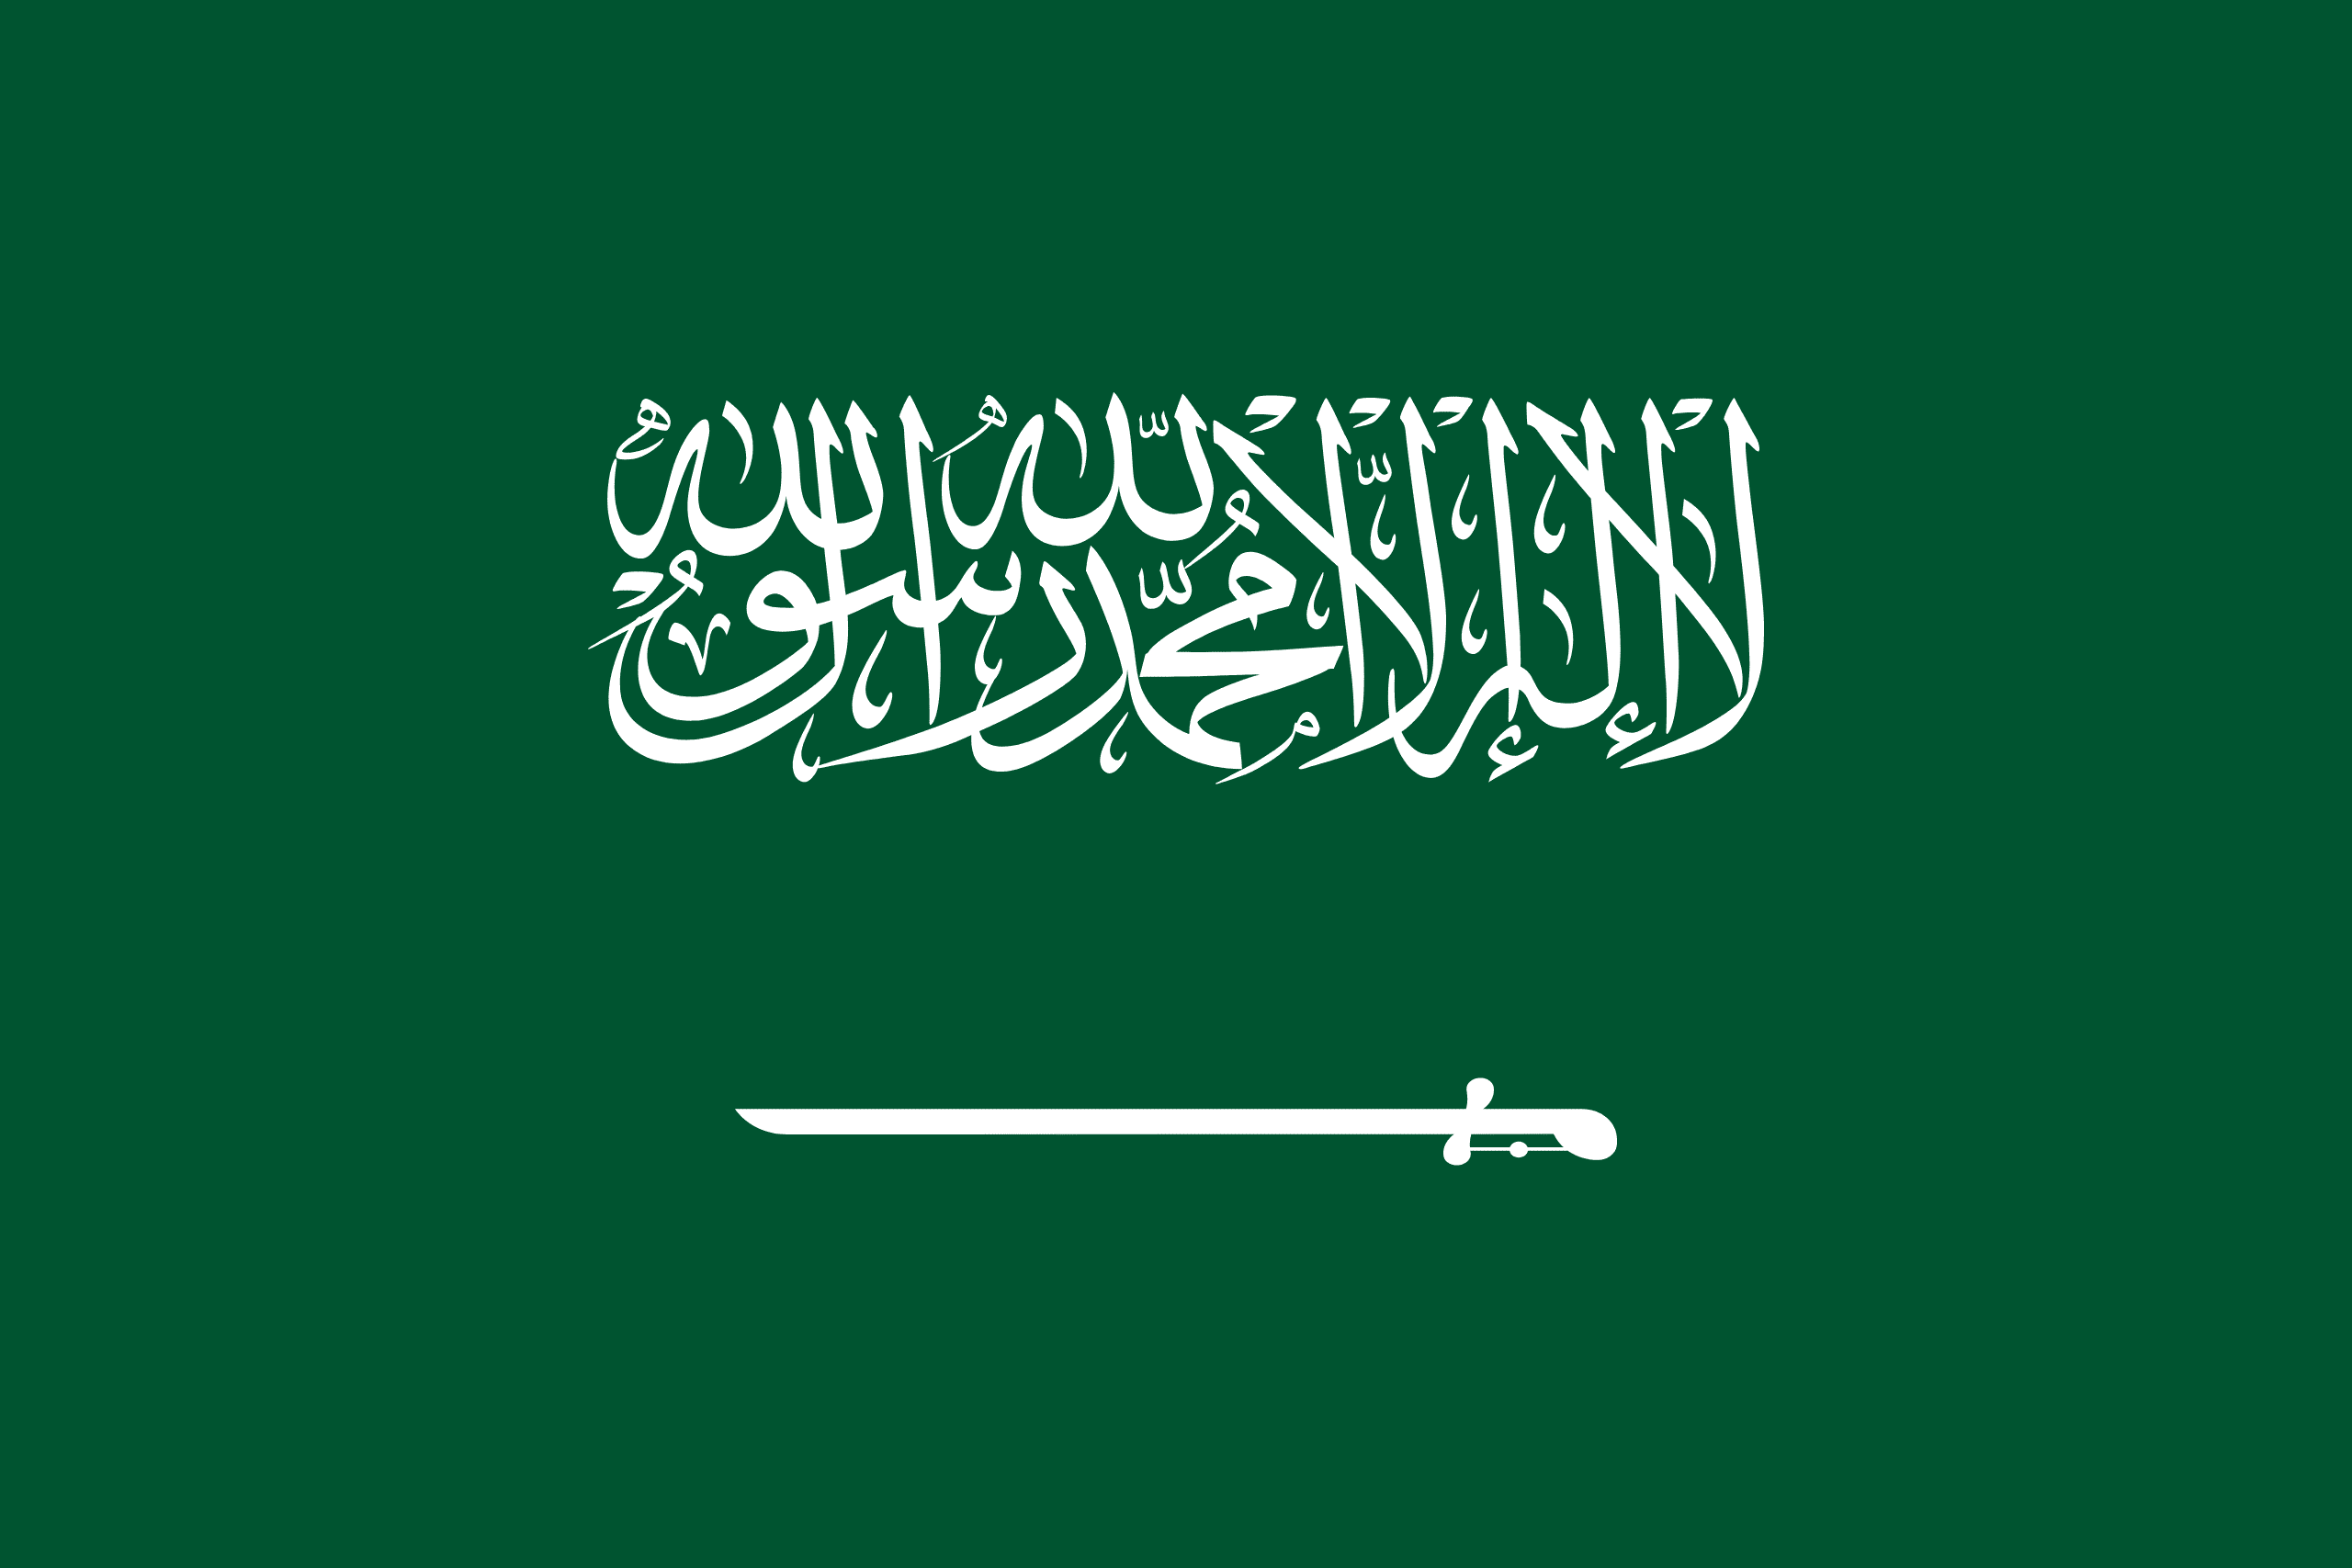 Suudi Arabistan Bayrağı ?? – Ülke bayrakları